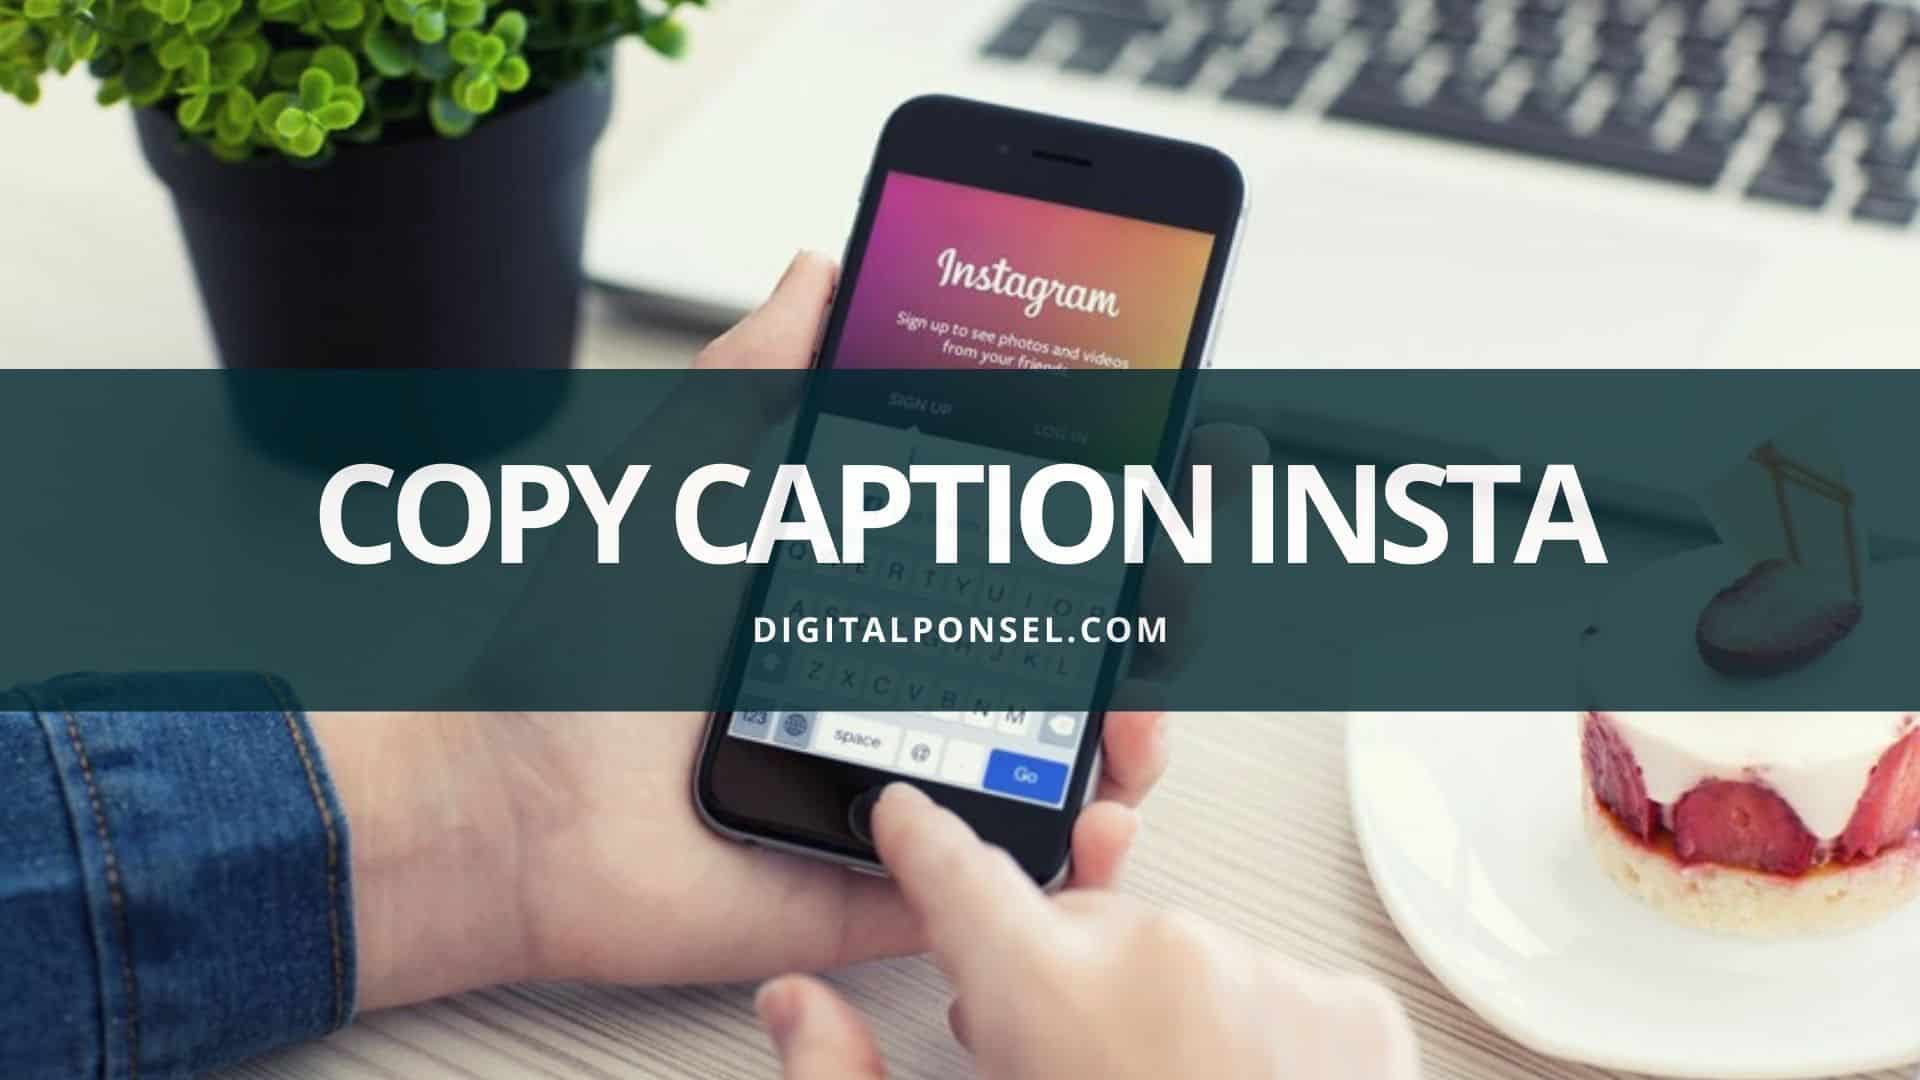 Cara Copy Paste Instagram. 2 Cara Copy Caption Instagram dengan Mudah dan Cepat